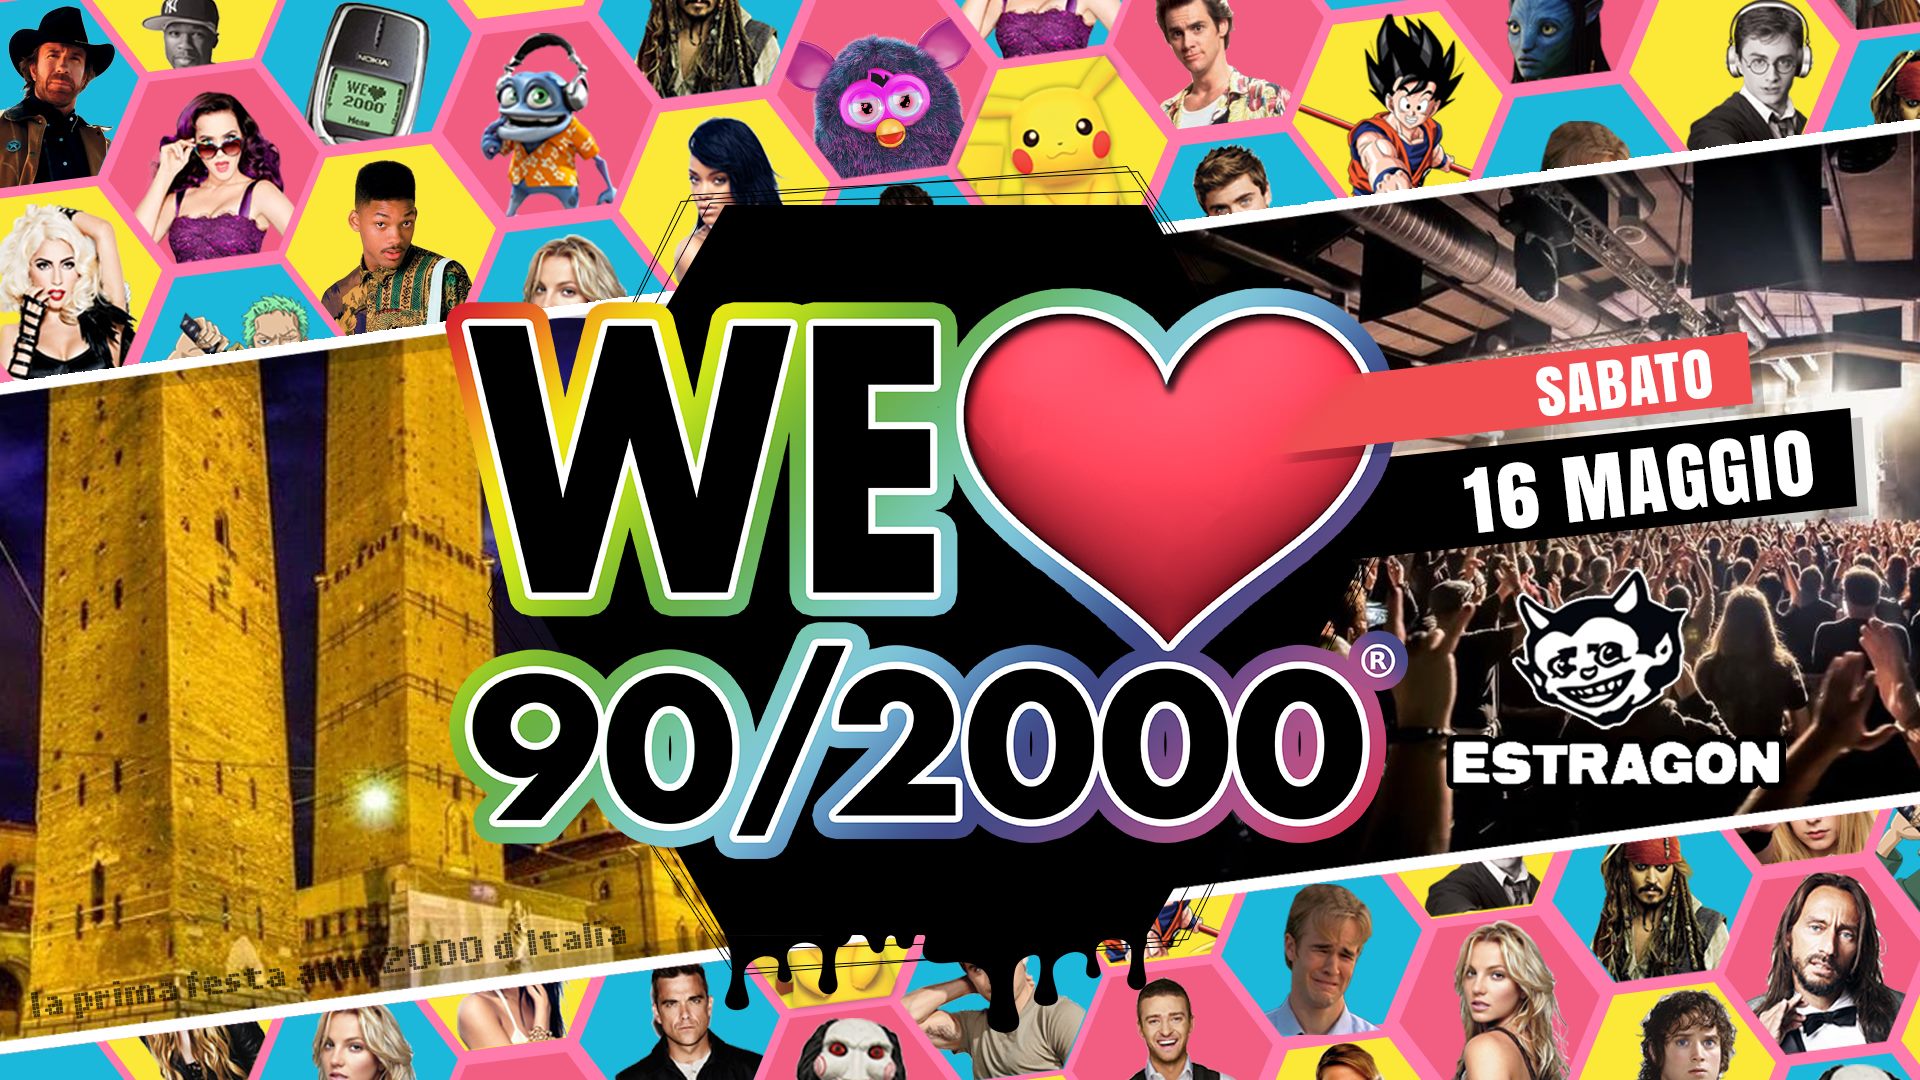 We Love 90/2000 Estragon Club Bologna